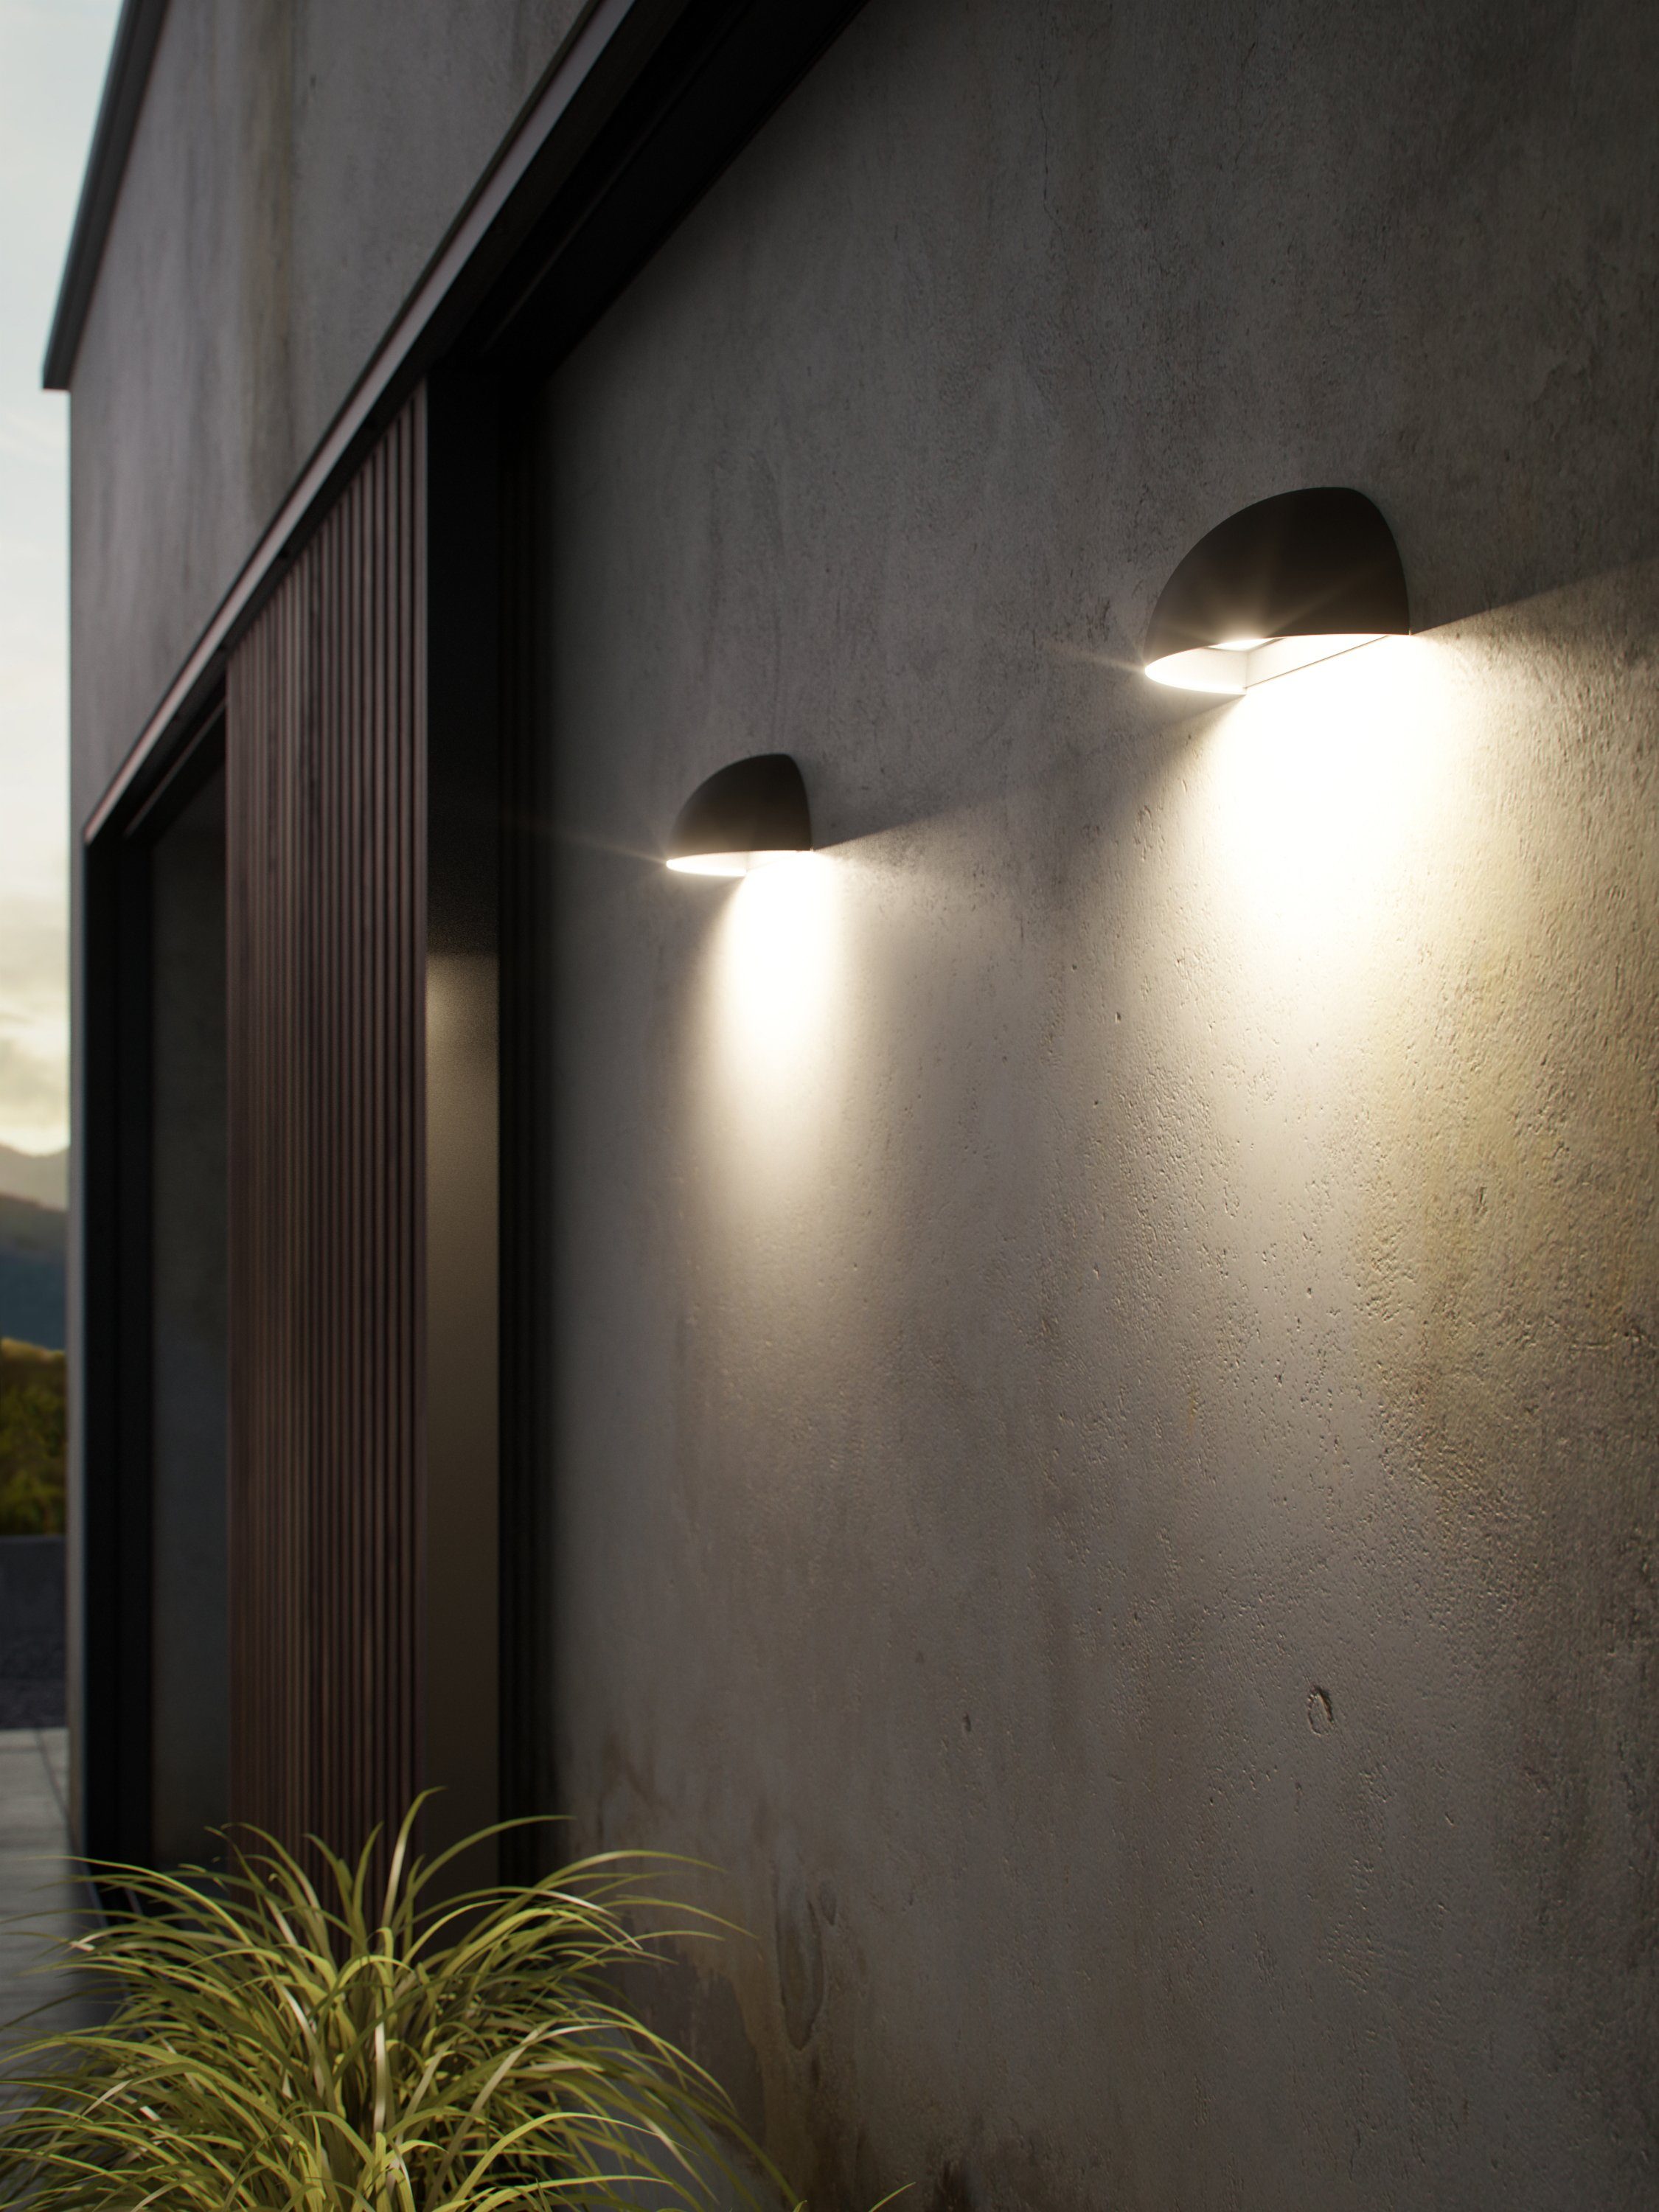 Nordlux Smarte inkl. dimmbar Home, Dimmer, Smart Licht, Smart LED-Leuchte integriert, Timerfunktion, Arcus, LED, LED fest Farbwechsler, Bewegungsmelder, steuerbares Light, Bluetooth